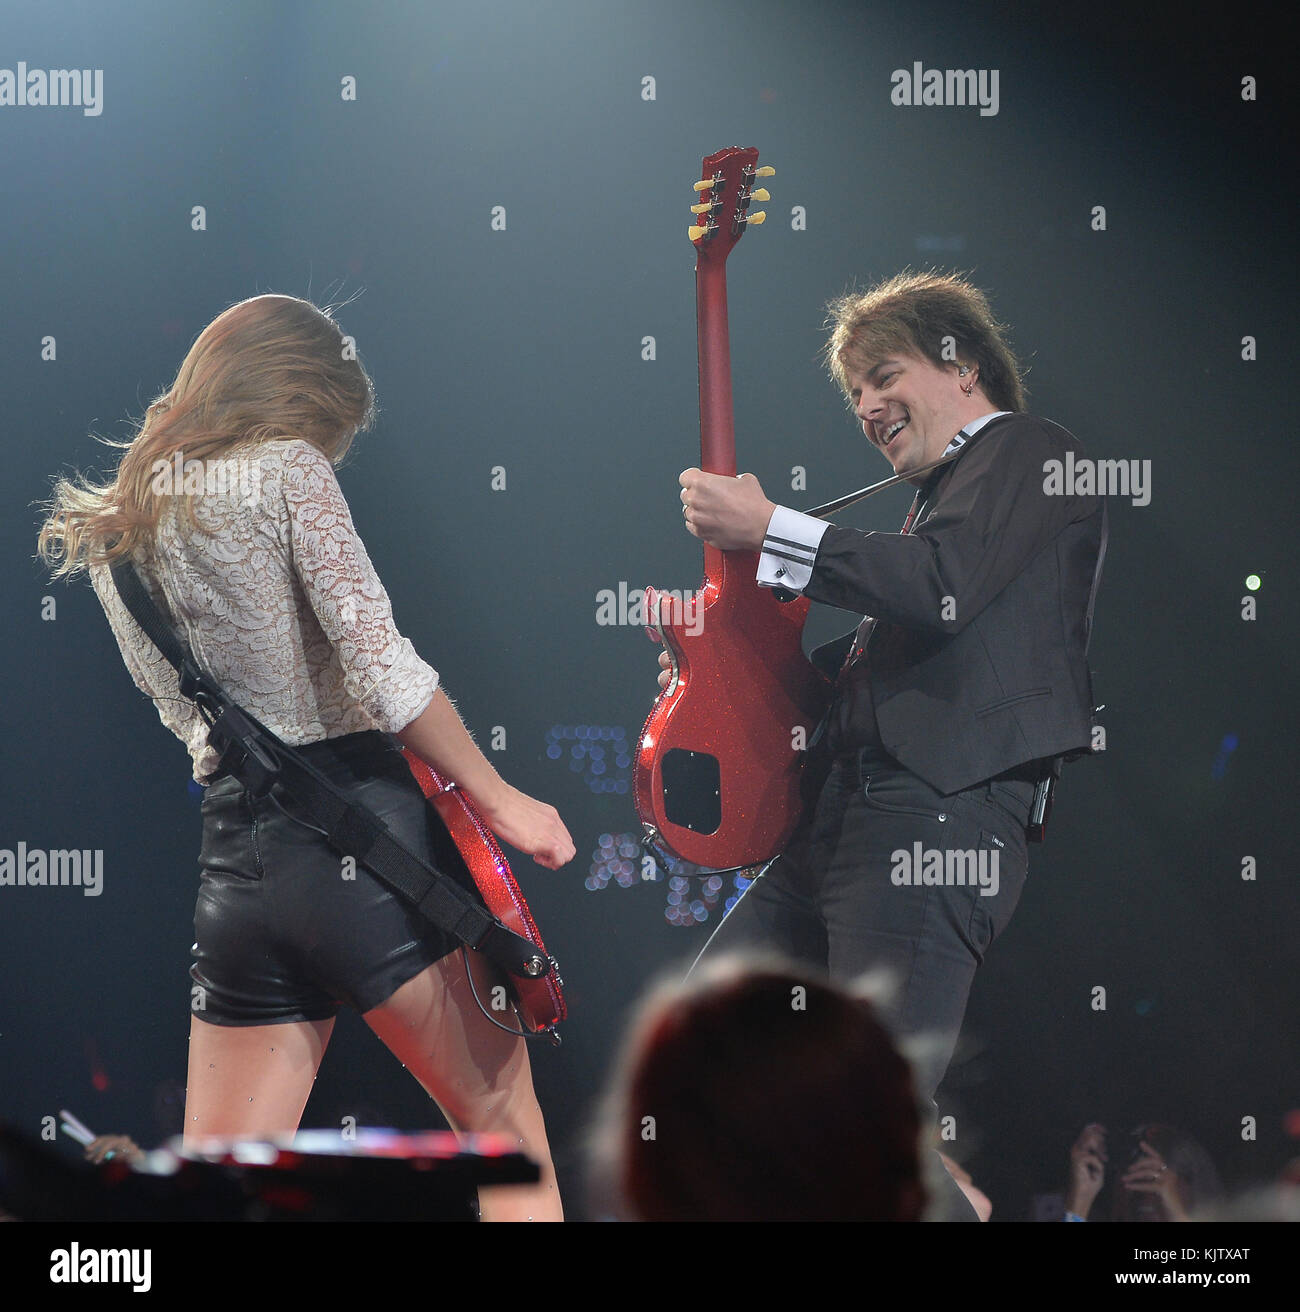 Atlanta, Ga - 18. April: sieben Grammy-gewinnerin Taylor Swift (* 13. Dezember 1989) führt die rote Tour an der Philips Arena am 18. April 2013 in Atlanta, Georgia: Taylor Swift Stockfoto